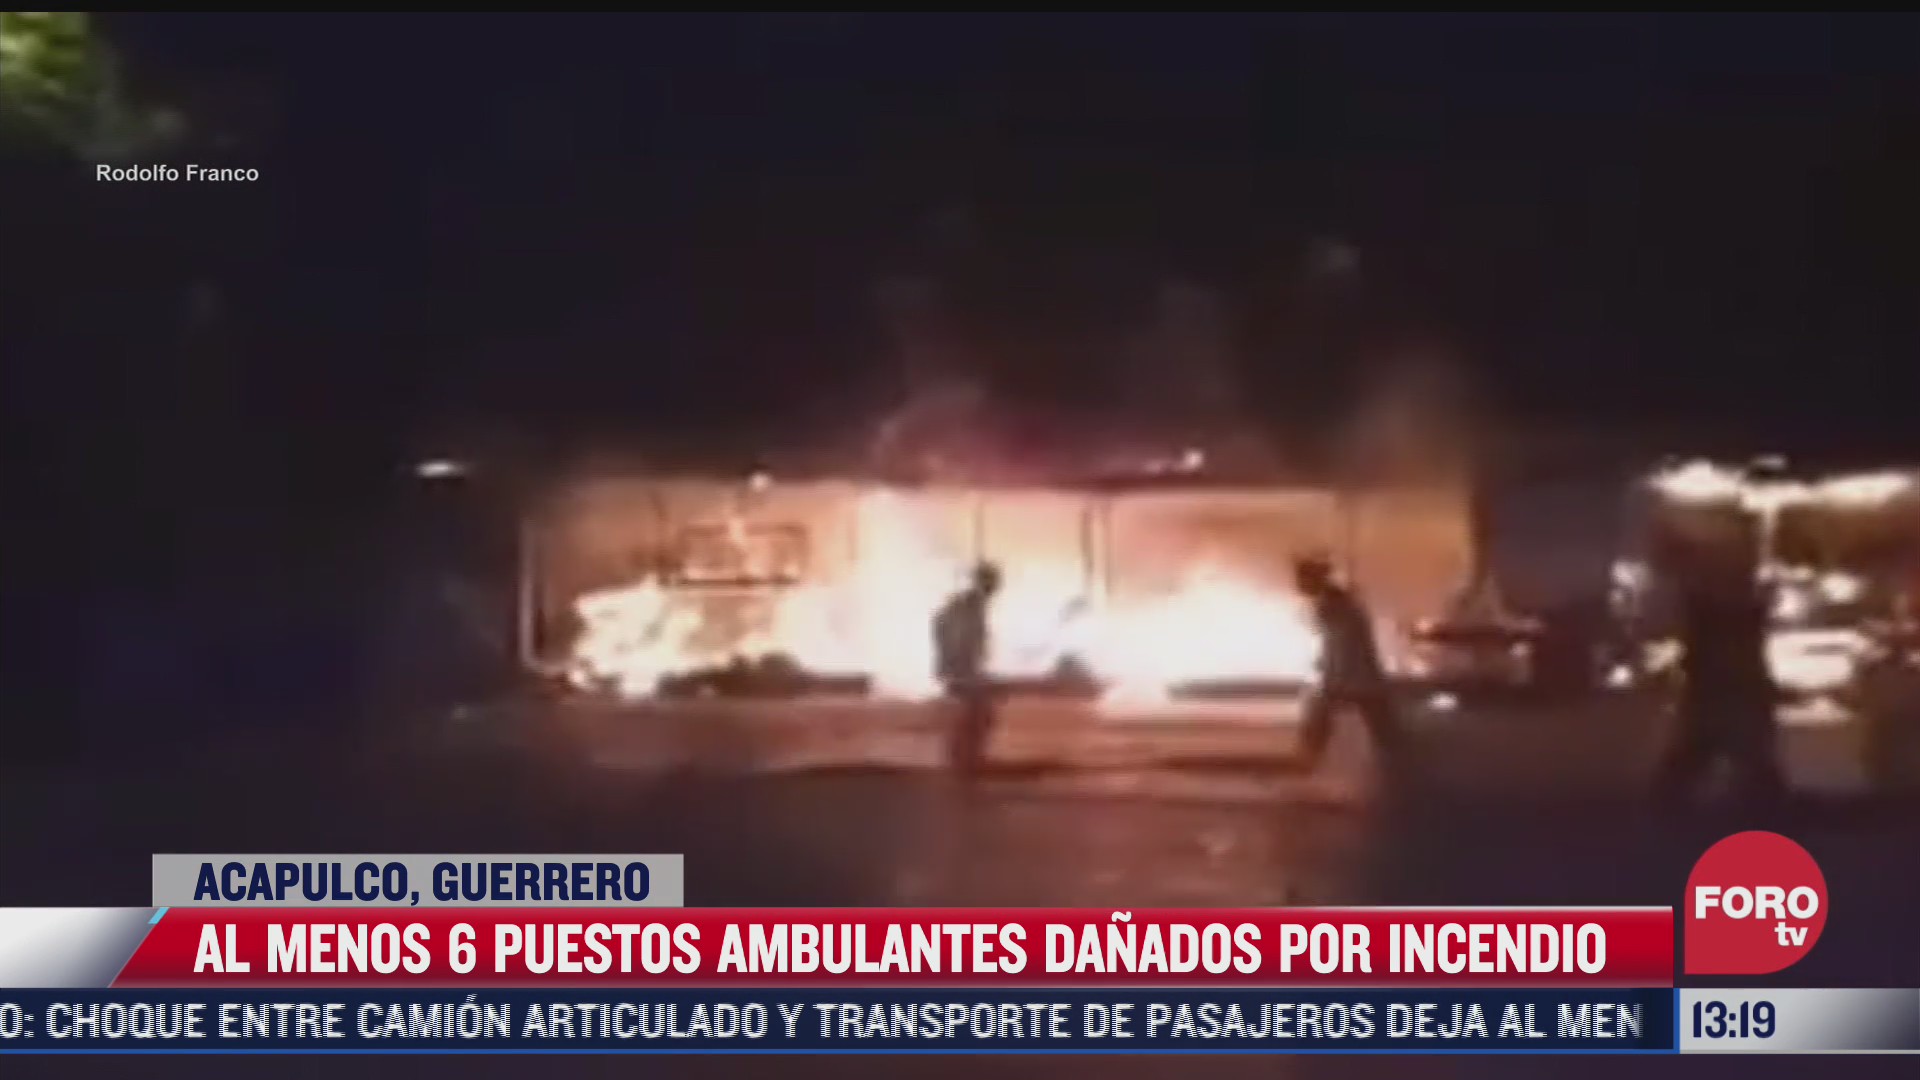 al menos 6 puestos ambulantes danados por incendio en acapulco